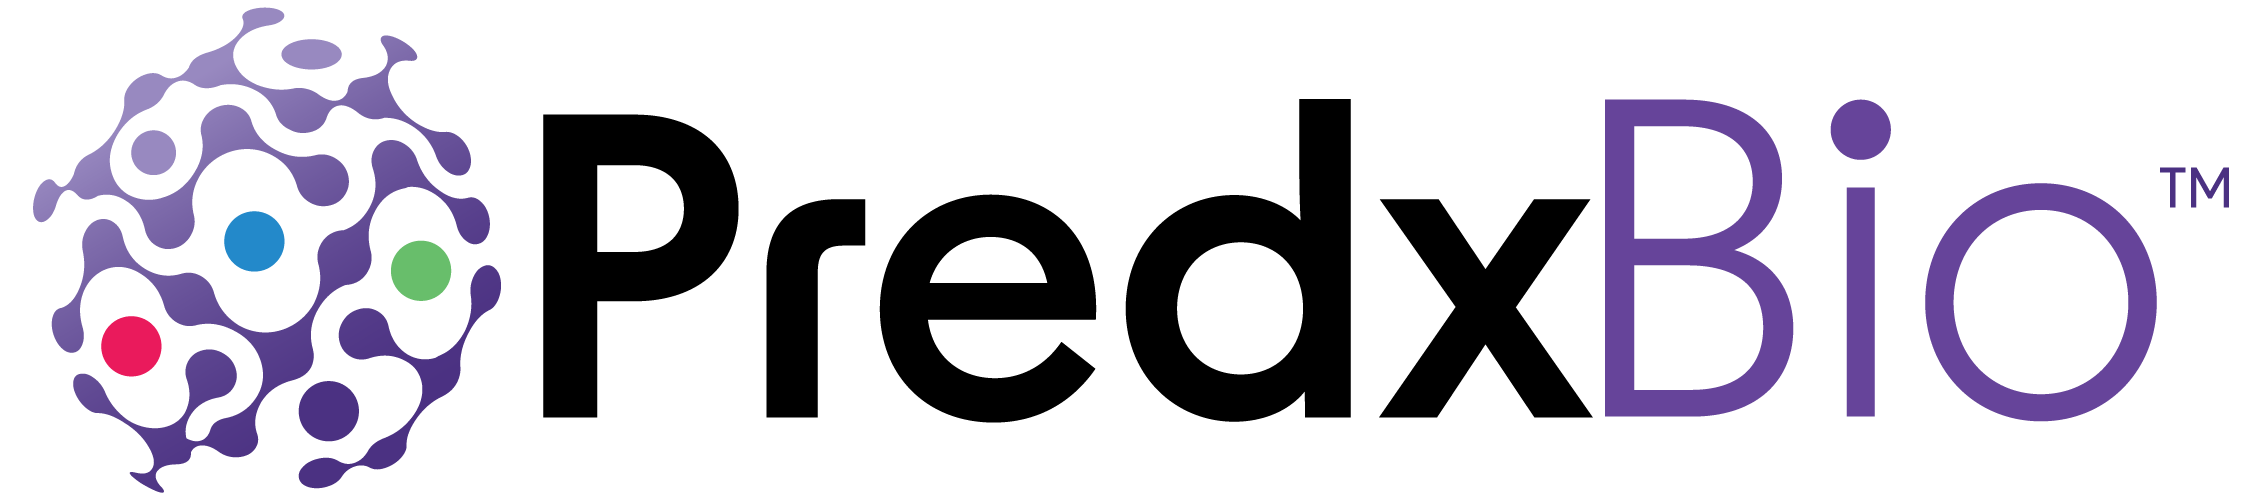 PredxBio-Logo-RGB